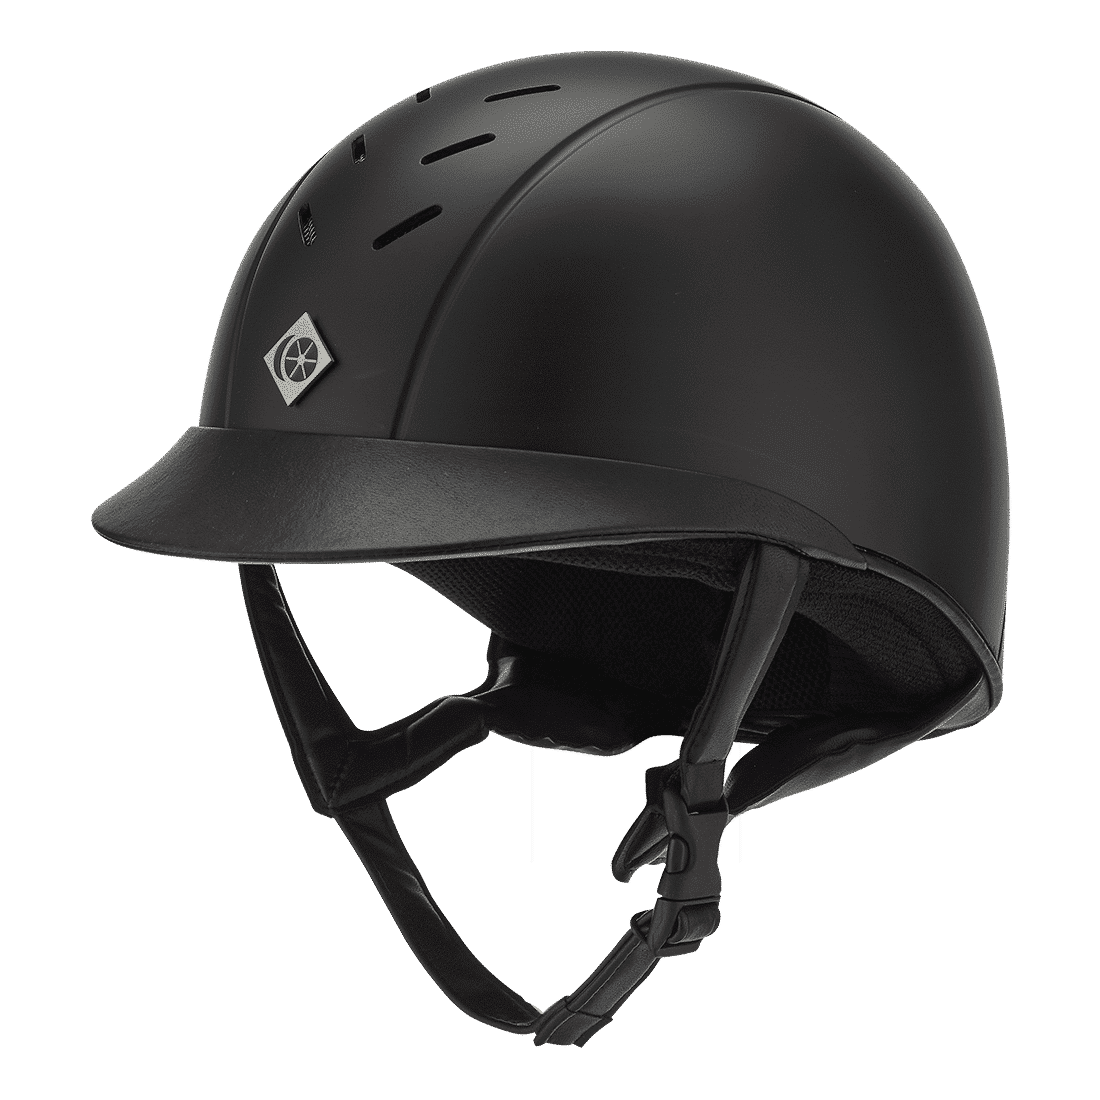 Charles Owen – The Ayrbrush Helmet Black